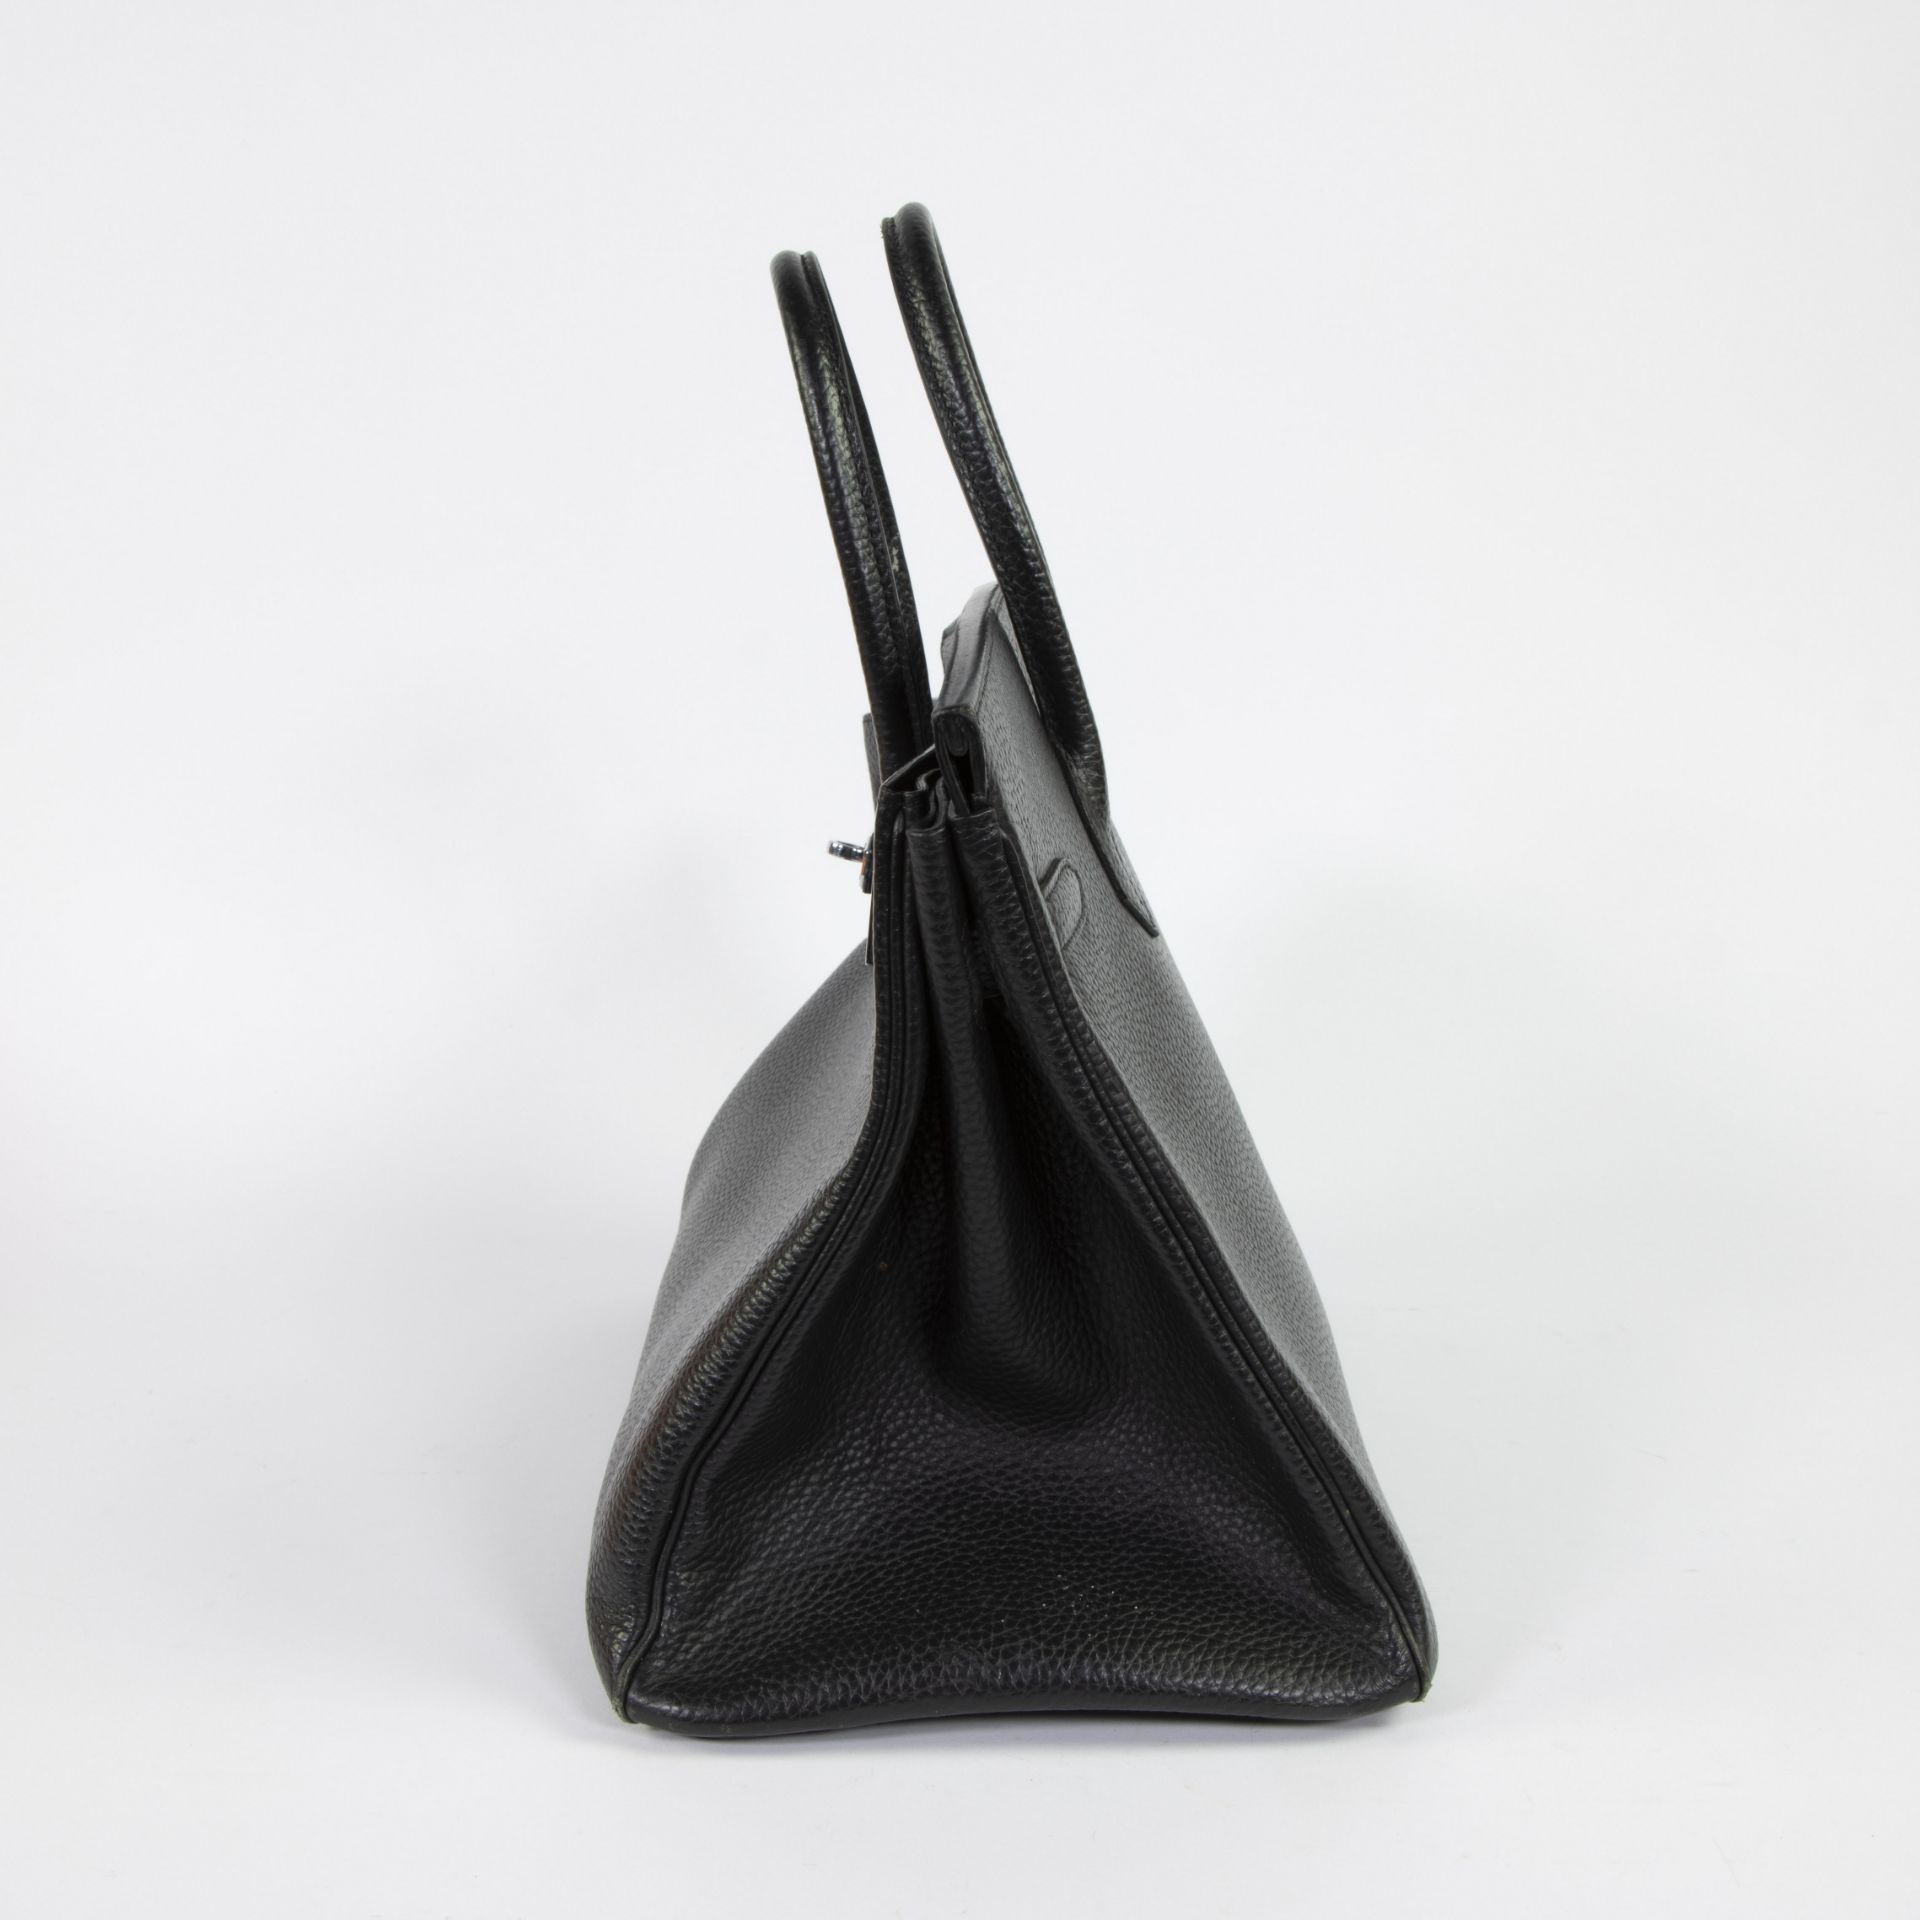 Birkin bag by Hermès Paris - Image 4 of 6